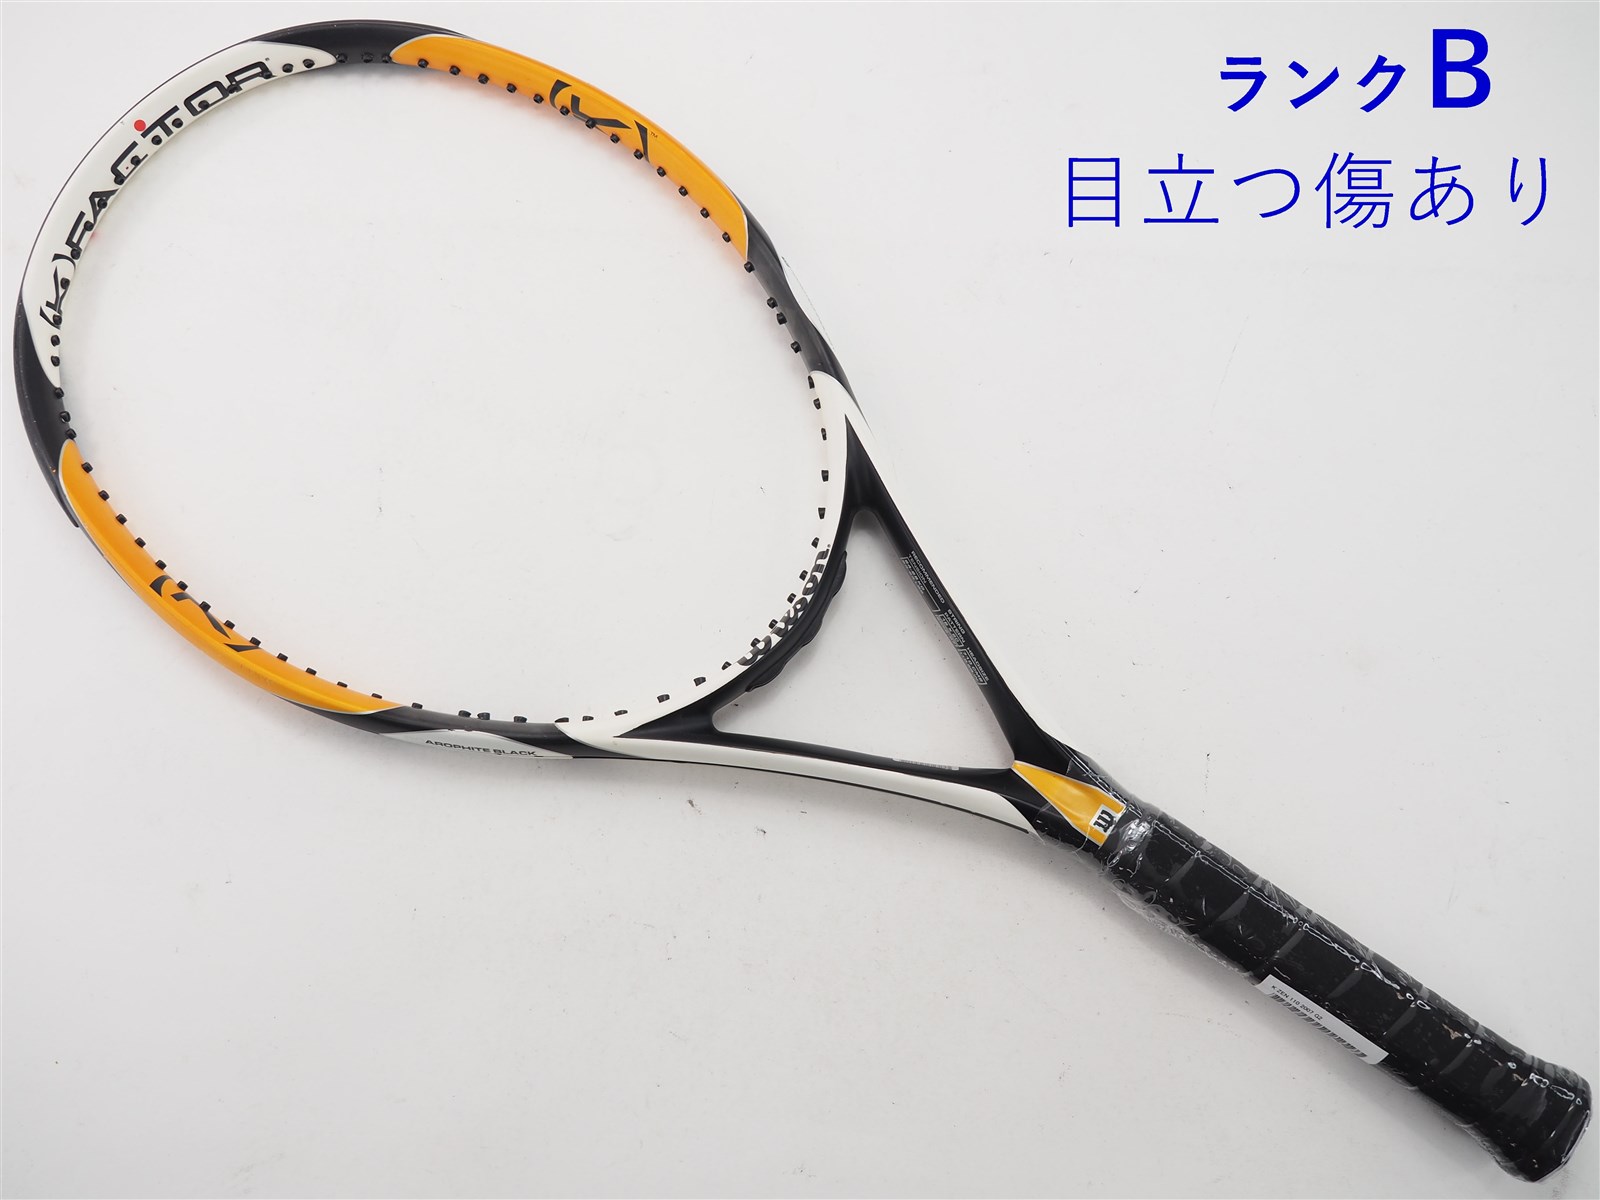 【中古】ウィルソン K ゼン 110 2007年モデルWILSON K ZEN 110 2007(G2)【中古 テニスラケット】【送料無料】